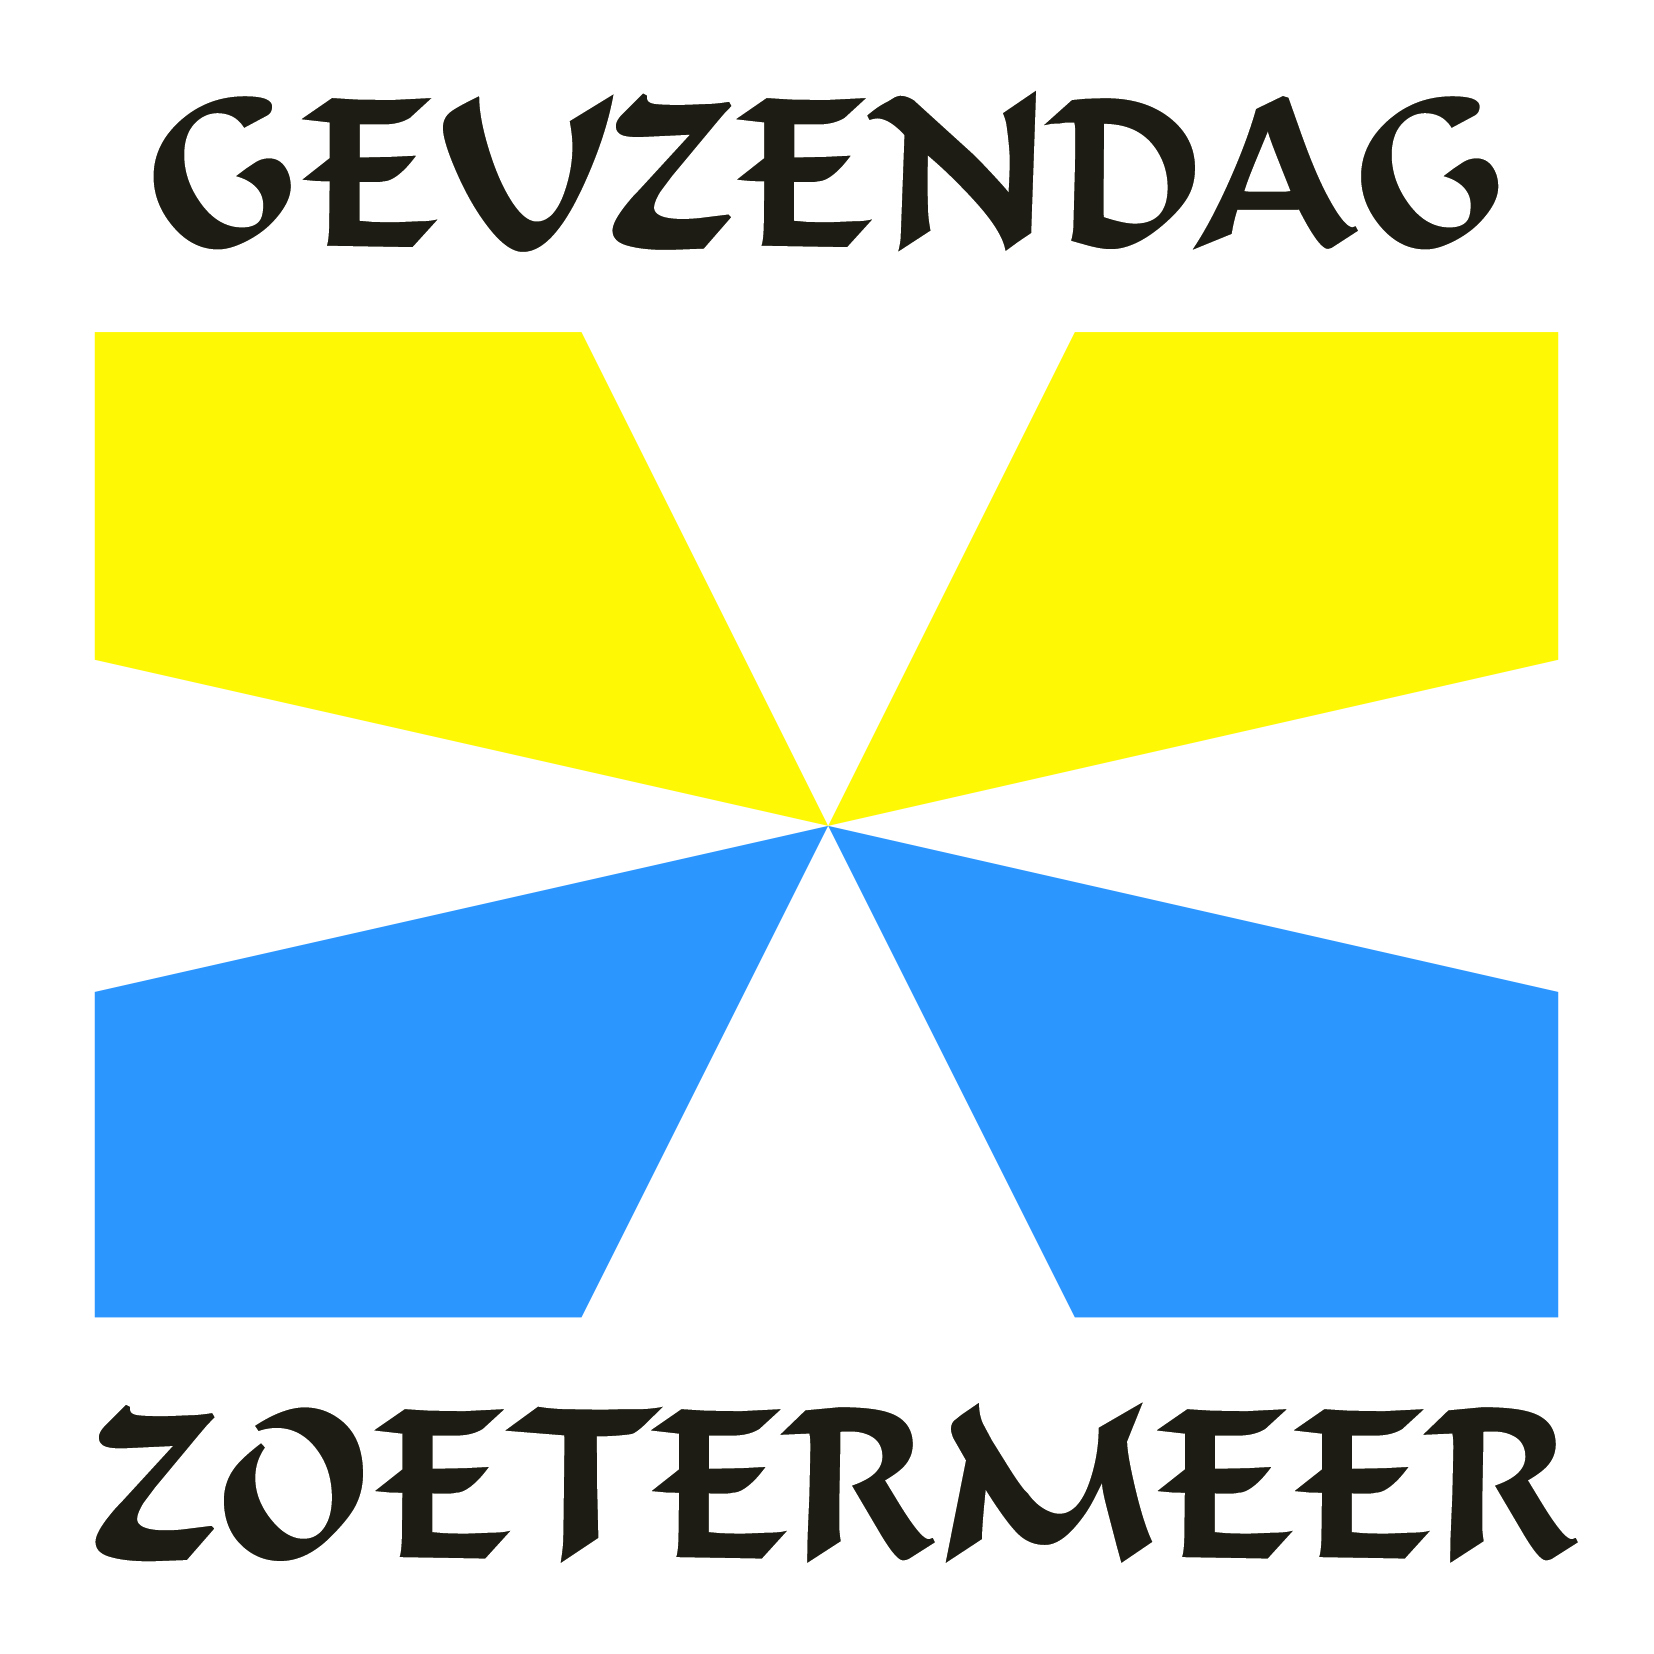 Geuzendag Zoetermeer